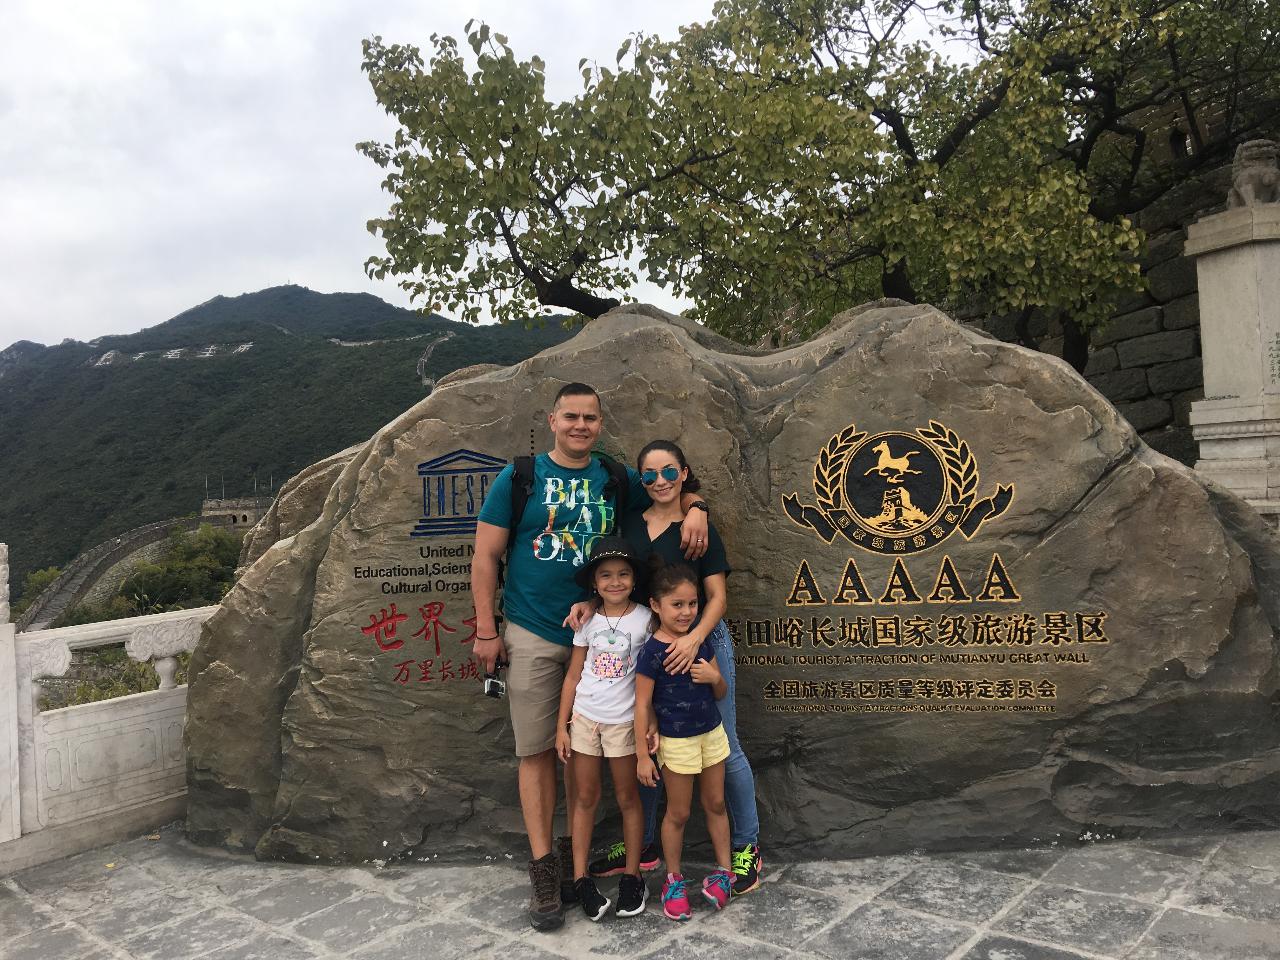 Beijing Bus Tour: 1 Day Mutianyu Great Wall Hiking Tour